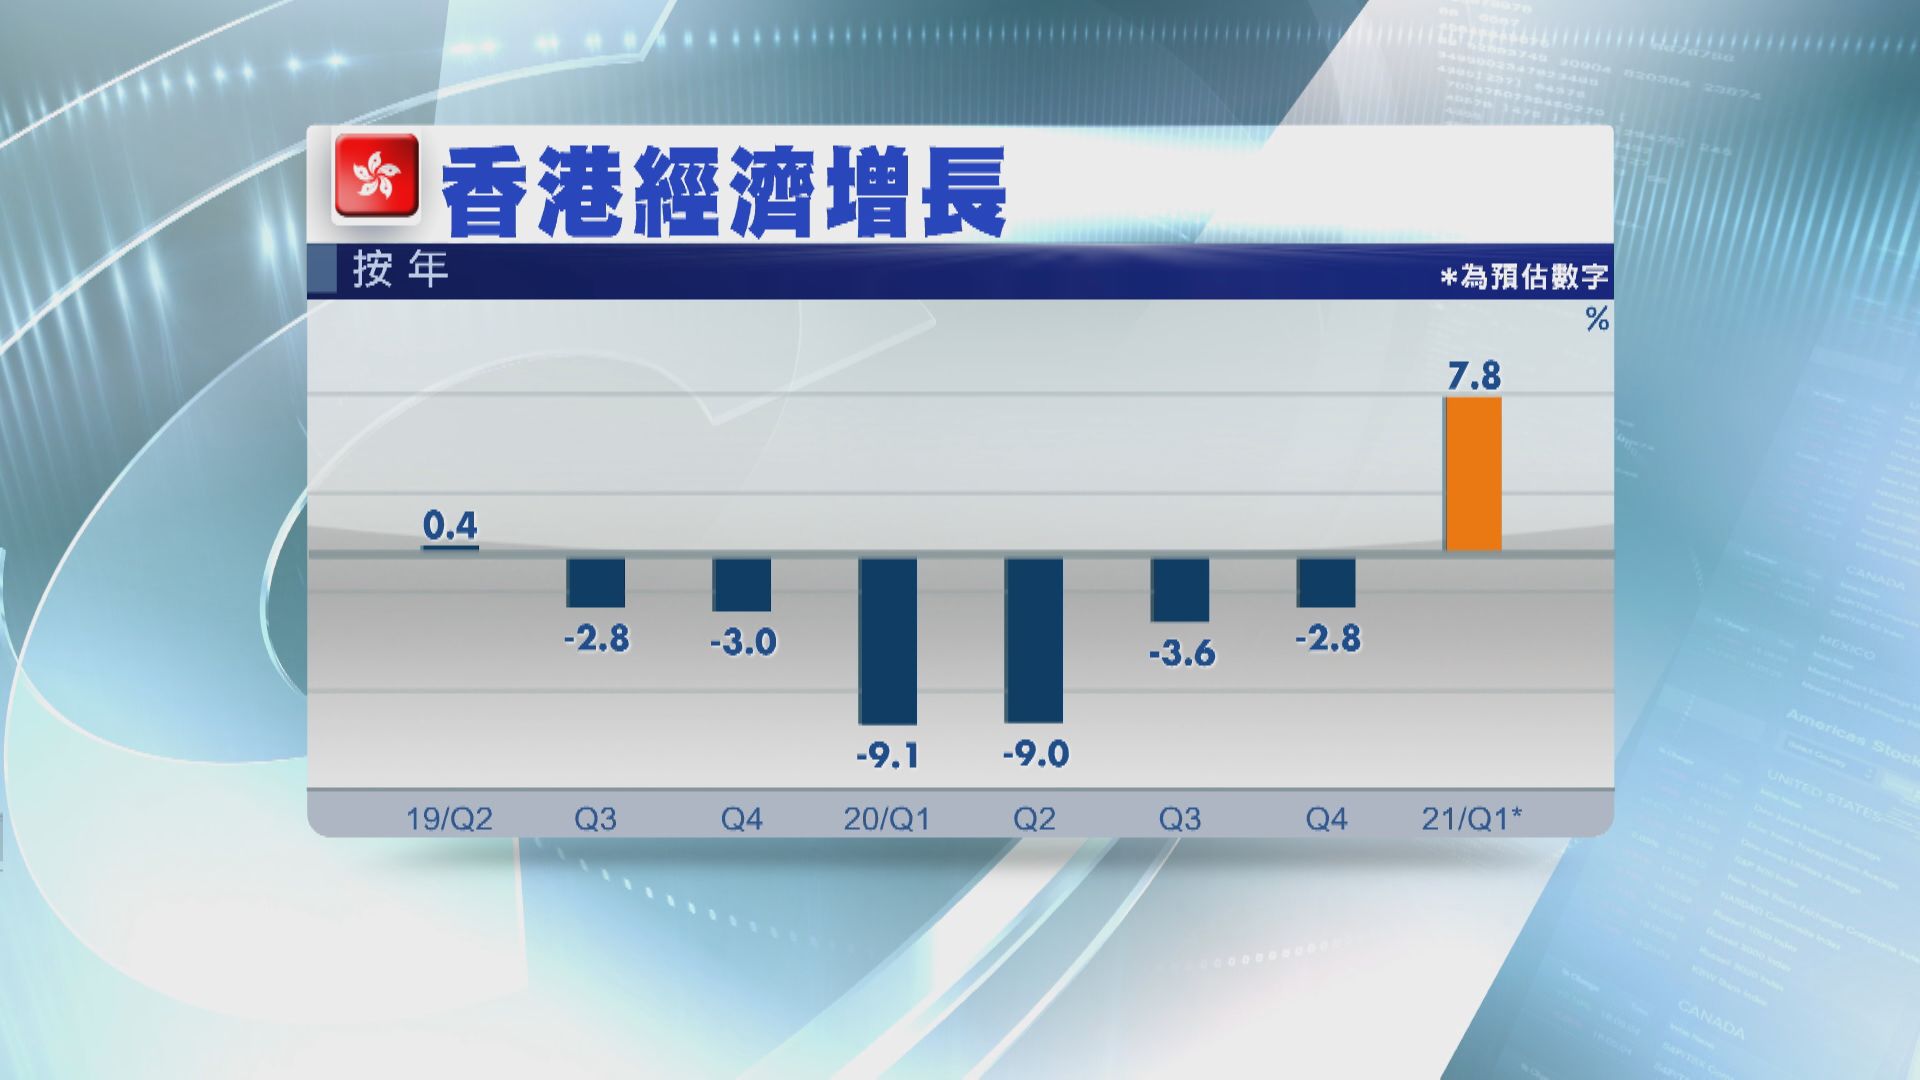 強勁外貿帶動  港首季GDP增7.8%